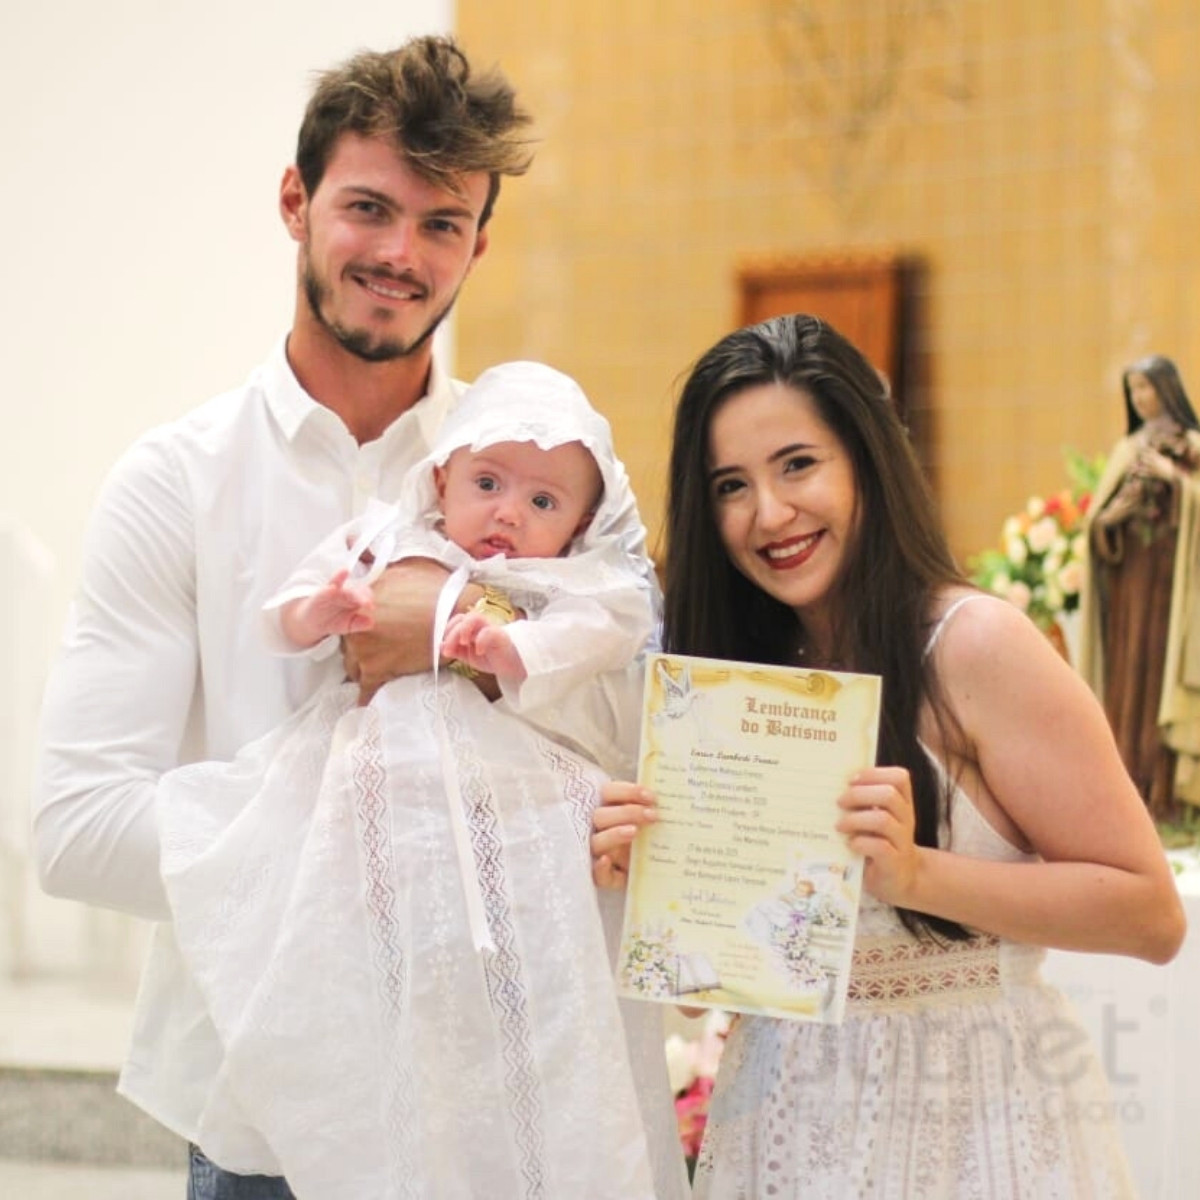 Mandrião para Batismo Manga Longa em Renda Paraíba  - Bordados do Ceará - Jutnet